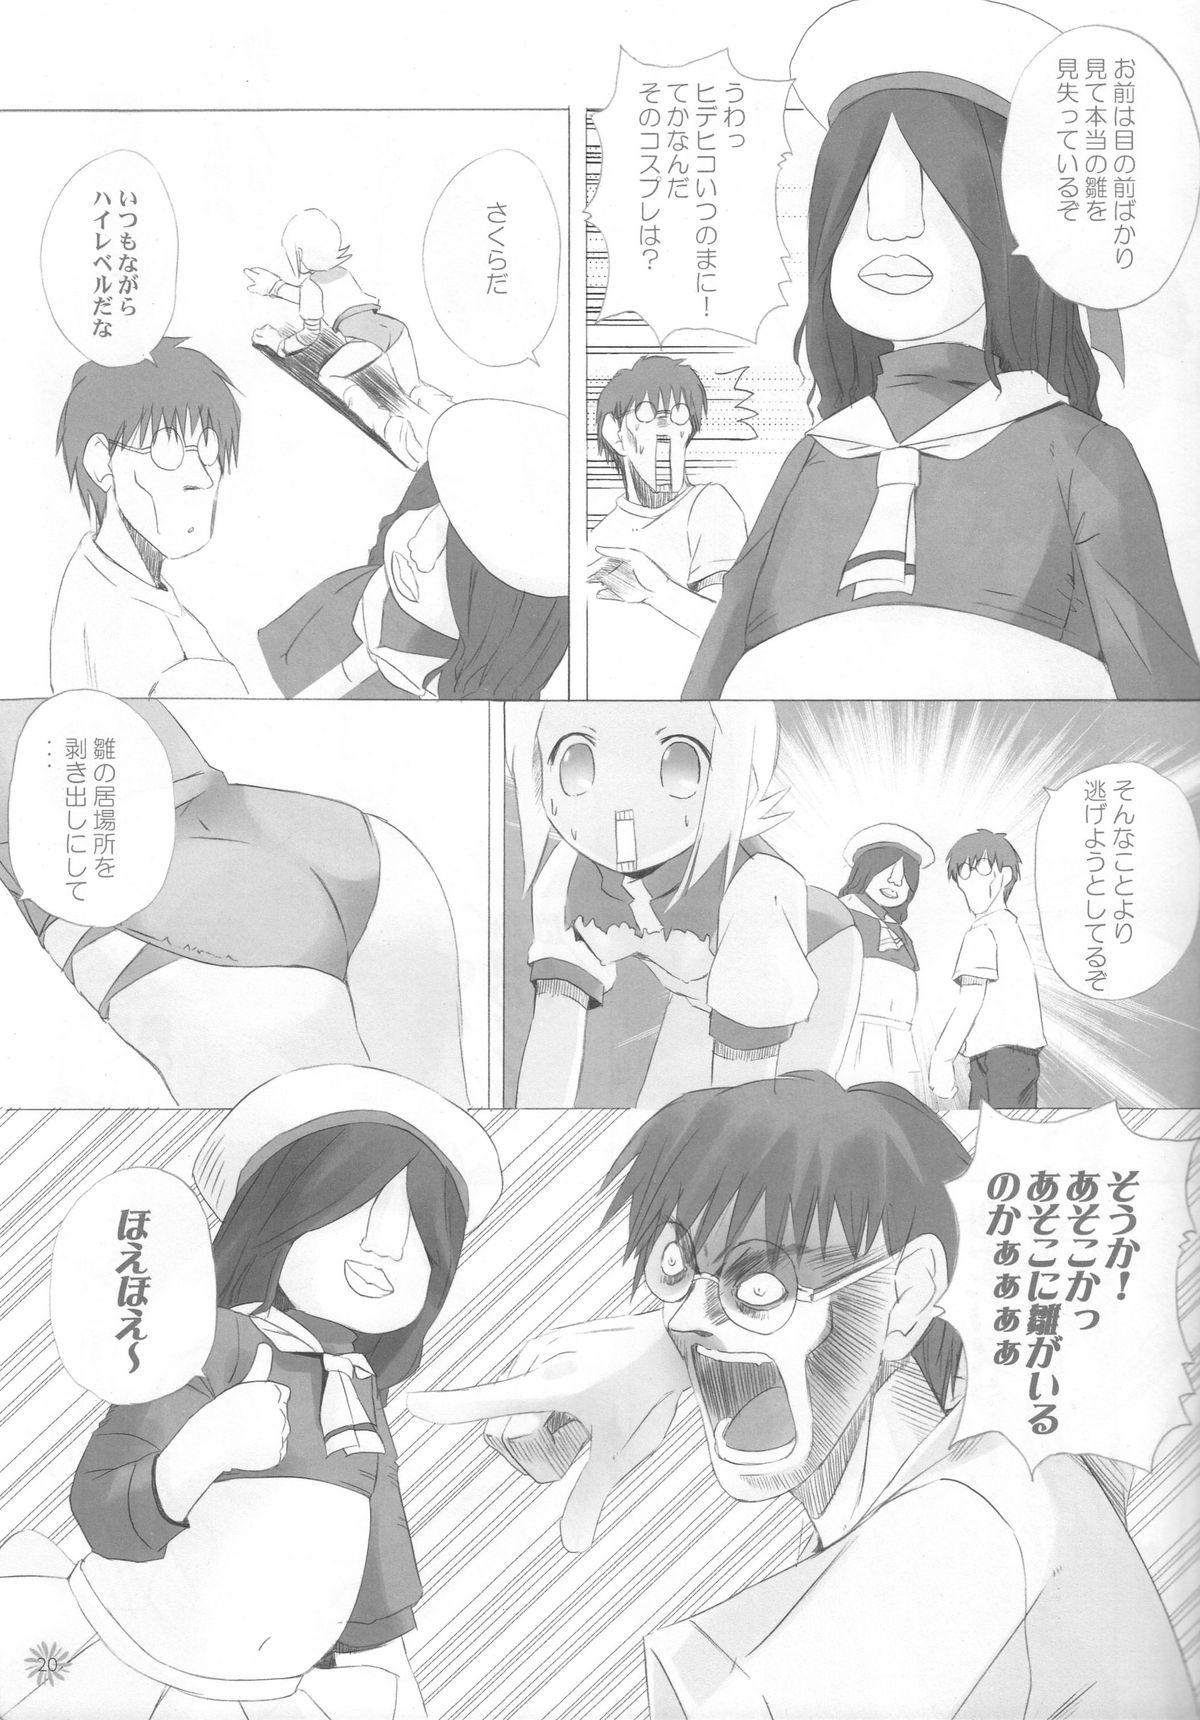 Transex CAPTOR - Cardcaptor sakura Higurashi no naku koro ni Diebuster Girl - Page 12